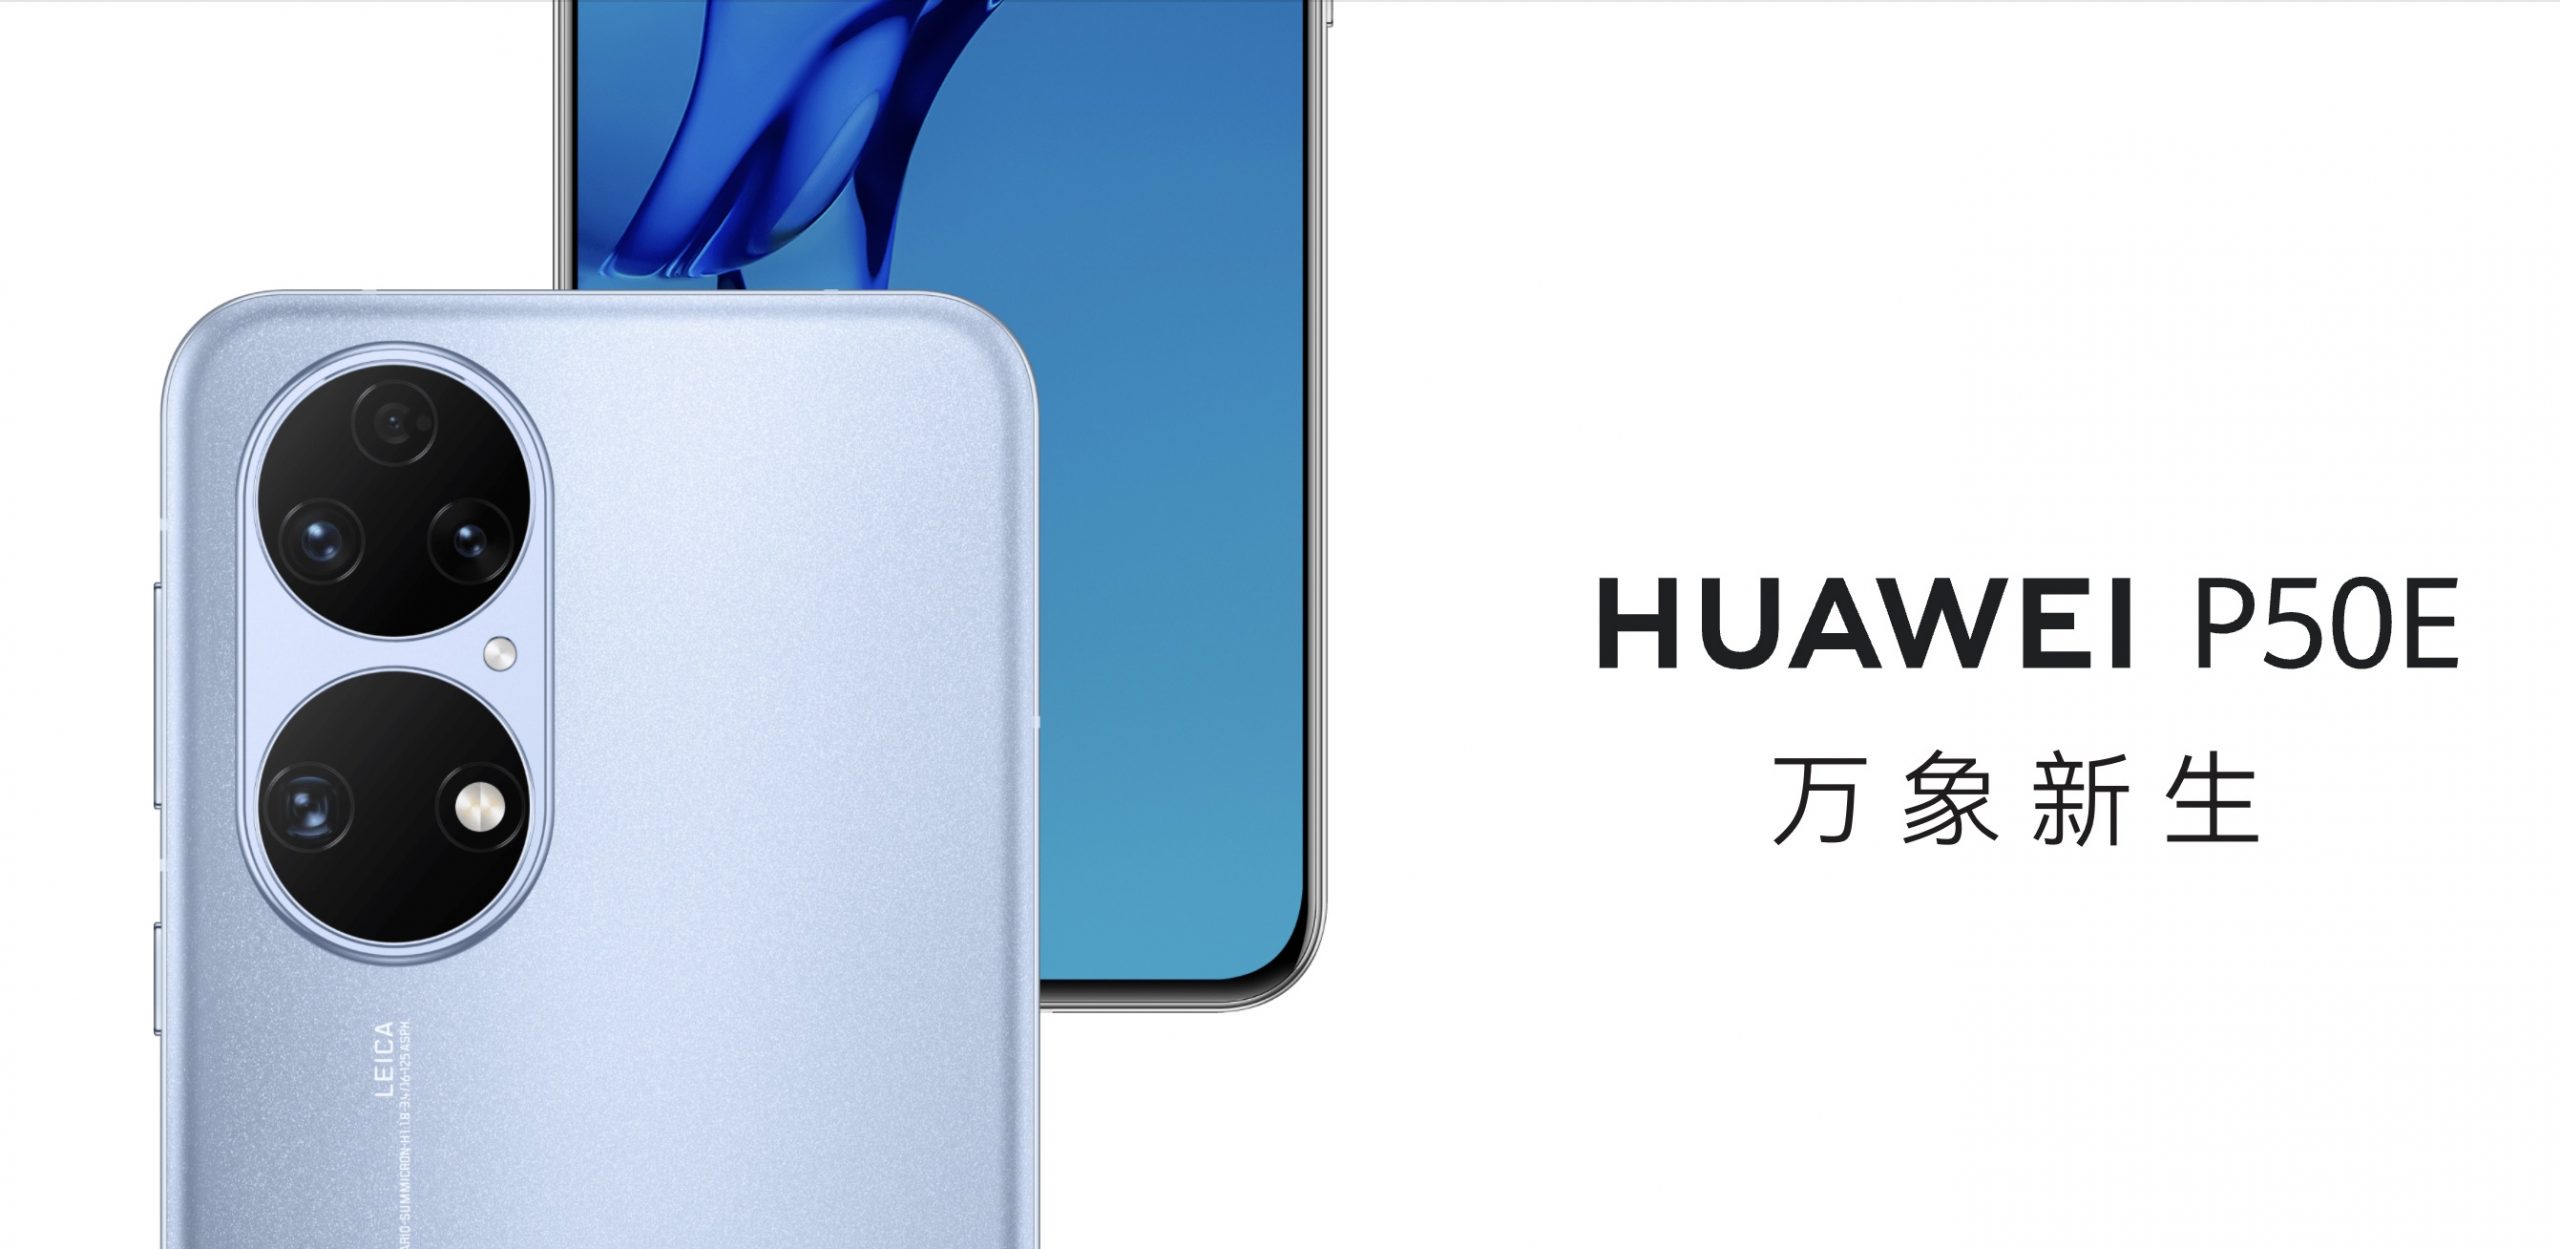 Huawei P50E julkistettiin Kiinan markkinoille.